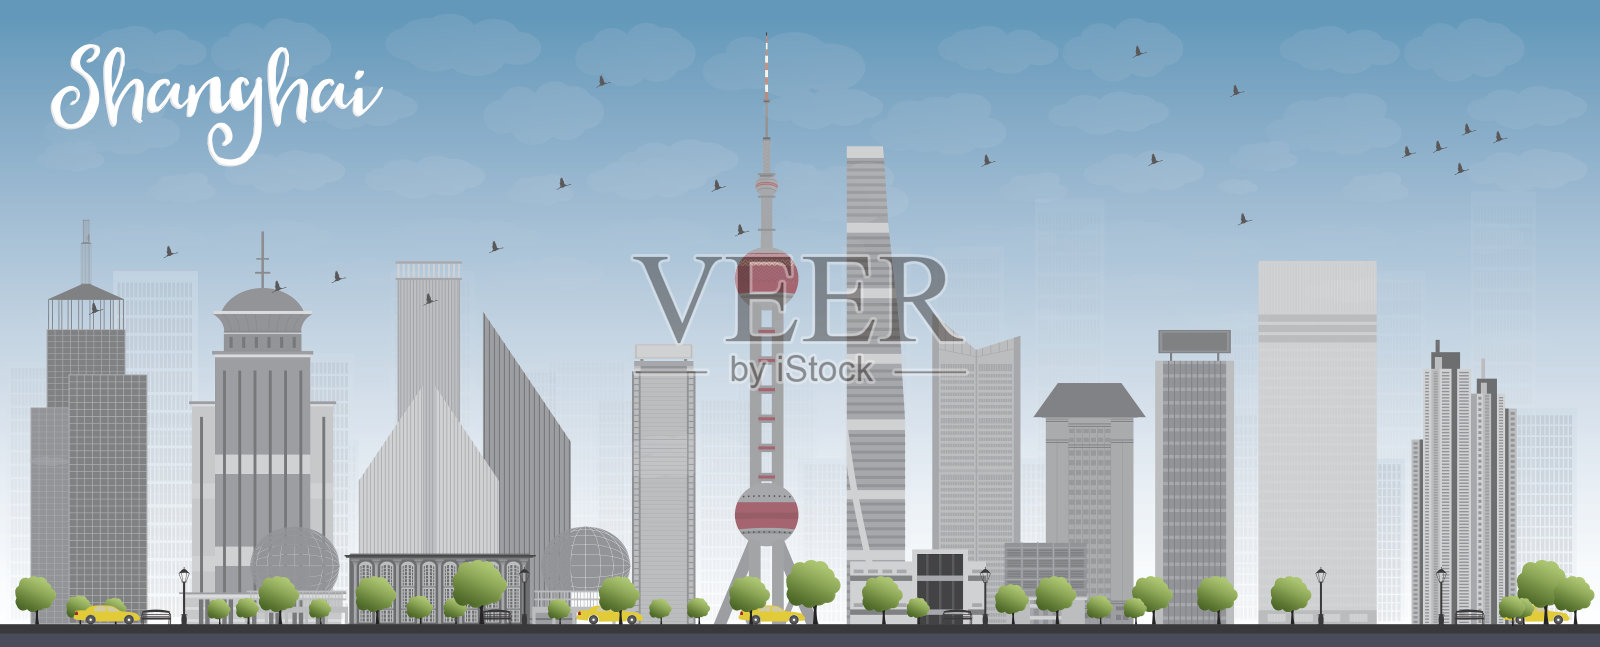 蓝色的天空和灰色的摩天大楼构成了上海的天际线插画图片素材